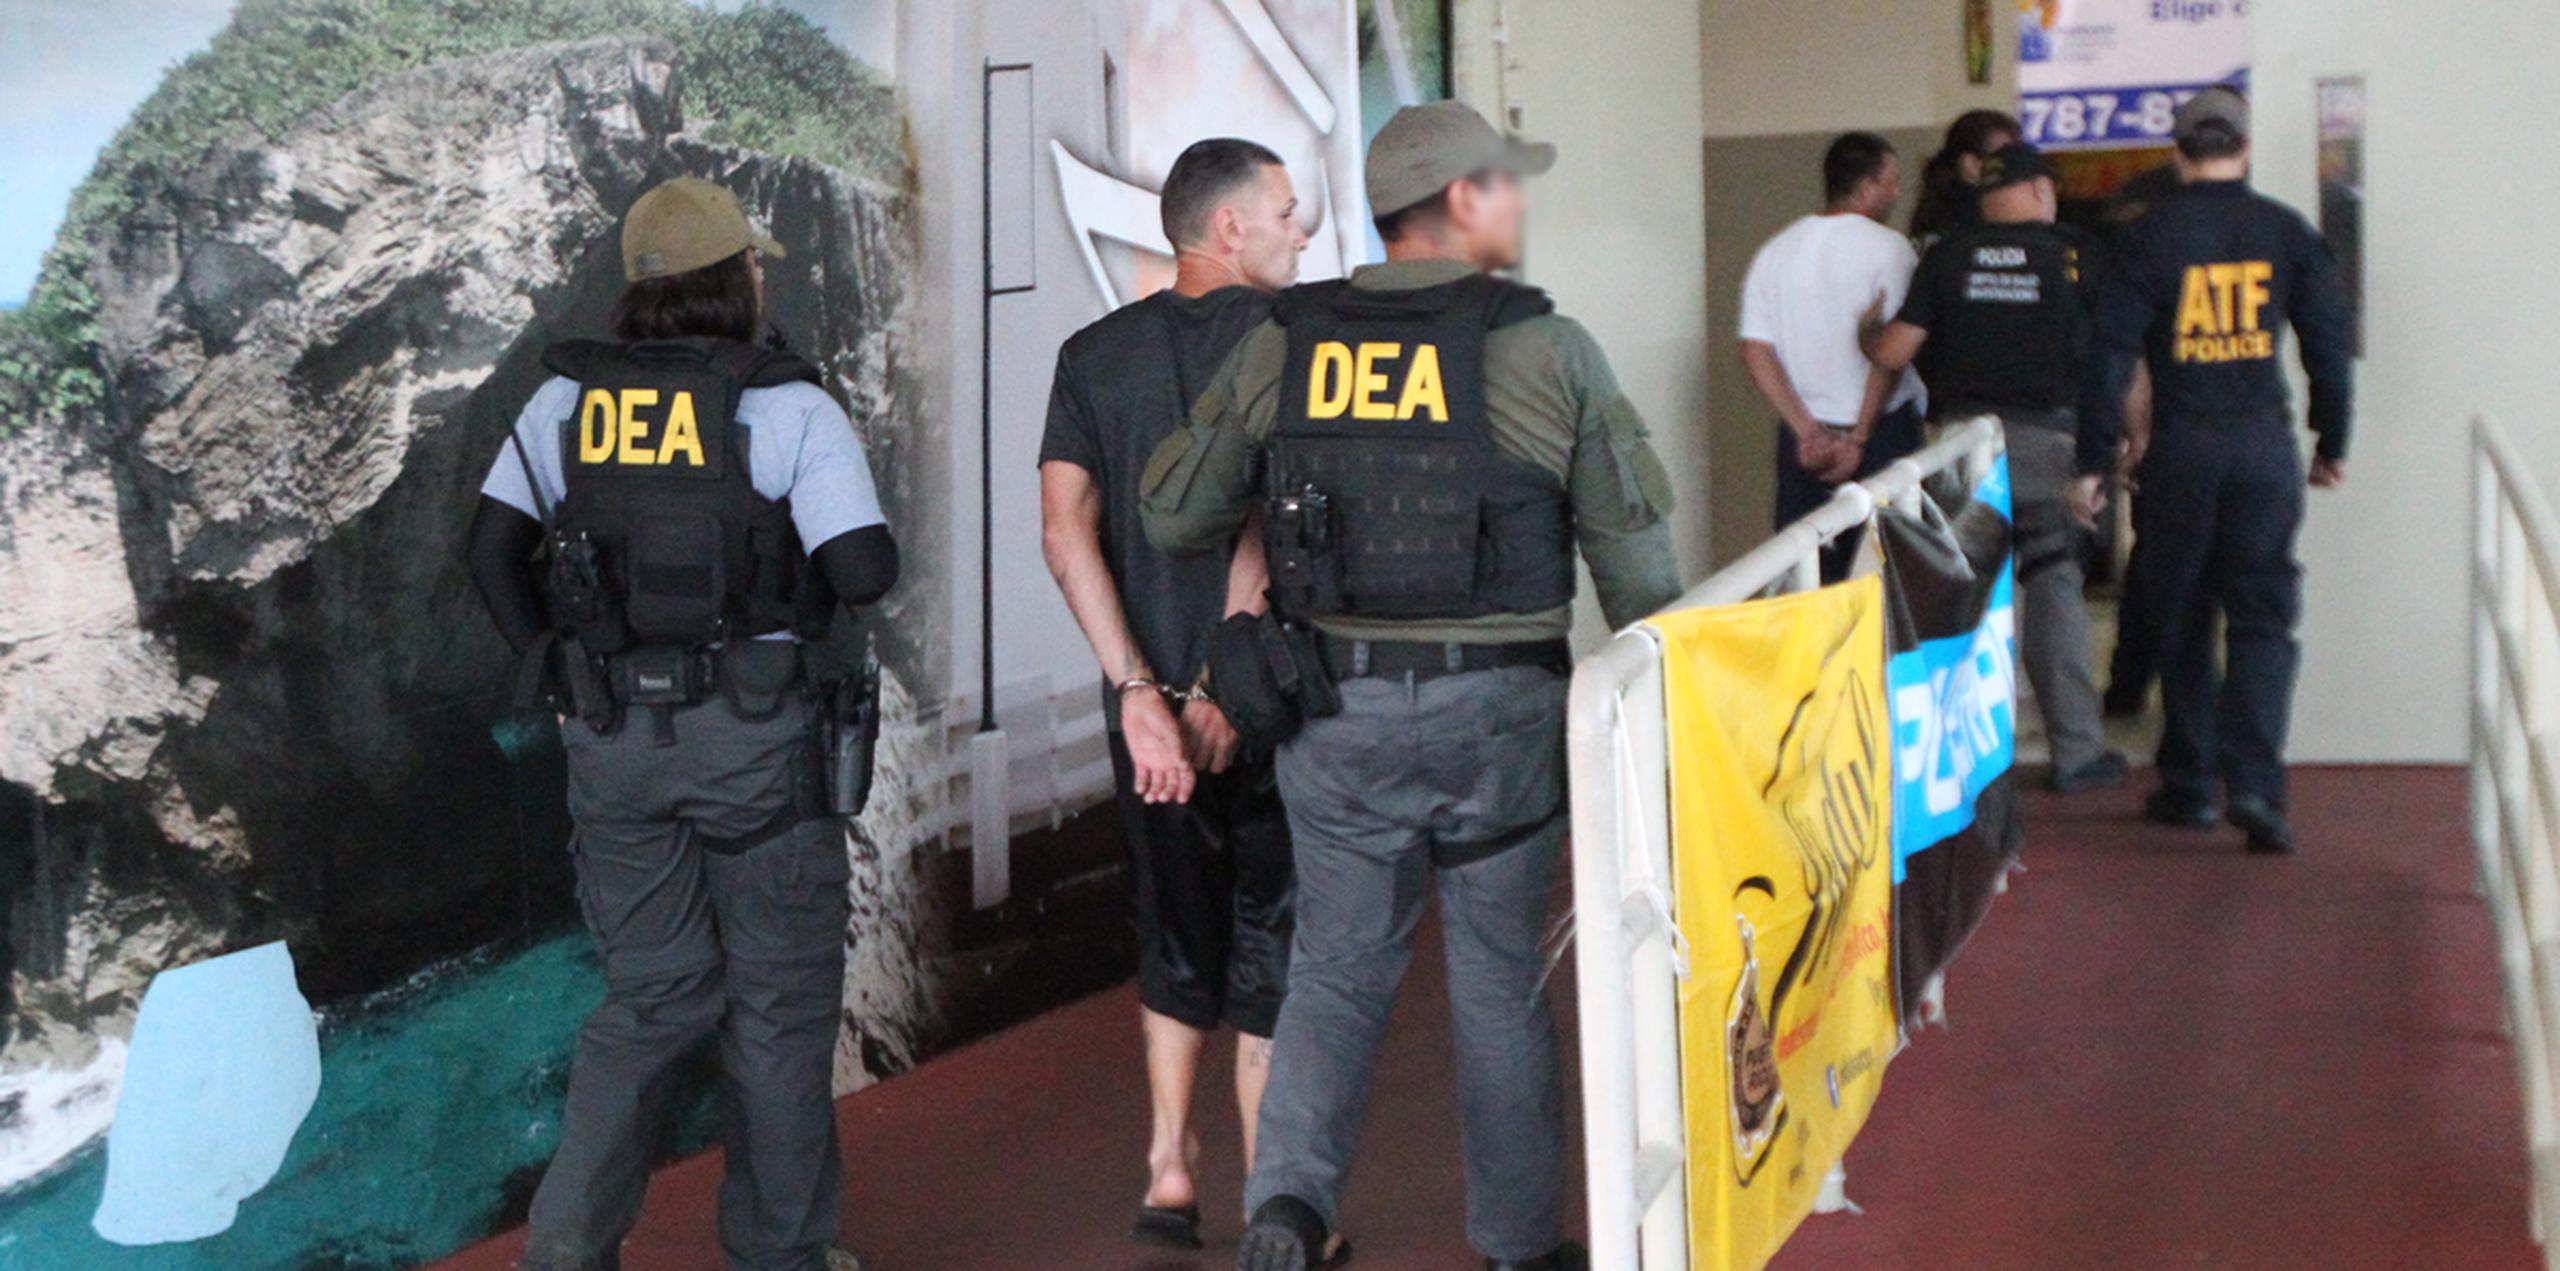 Los detenidos fueron llevados al coliseo Manuel “Petaca” Iguina, en Arecibo, para el procesamiento inicial. (alex.figueroa@gfrmedia.com)